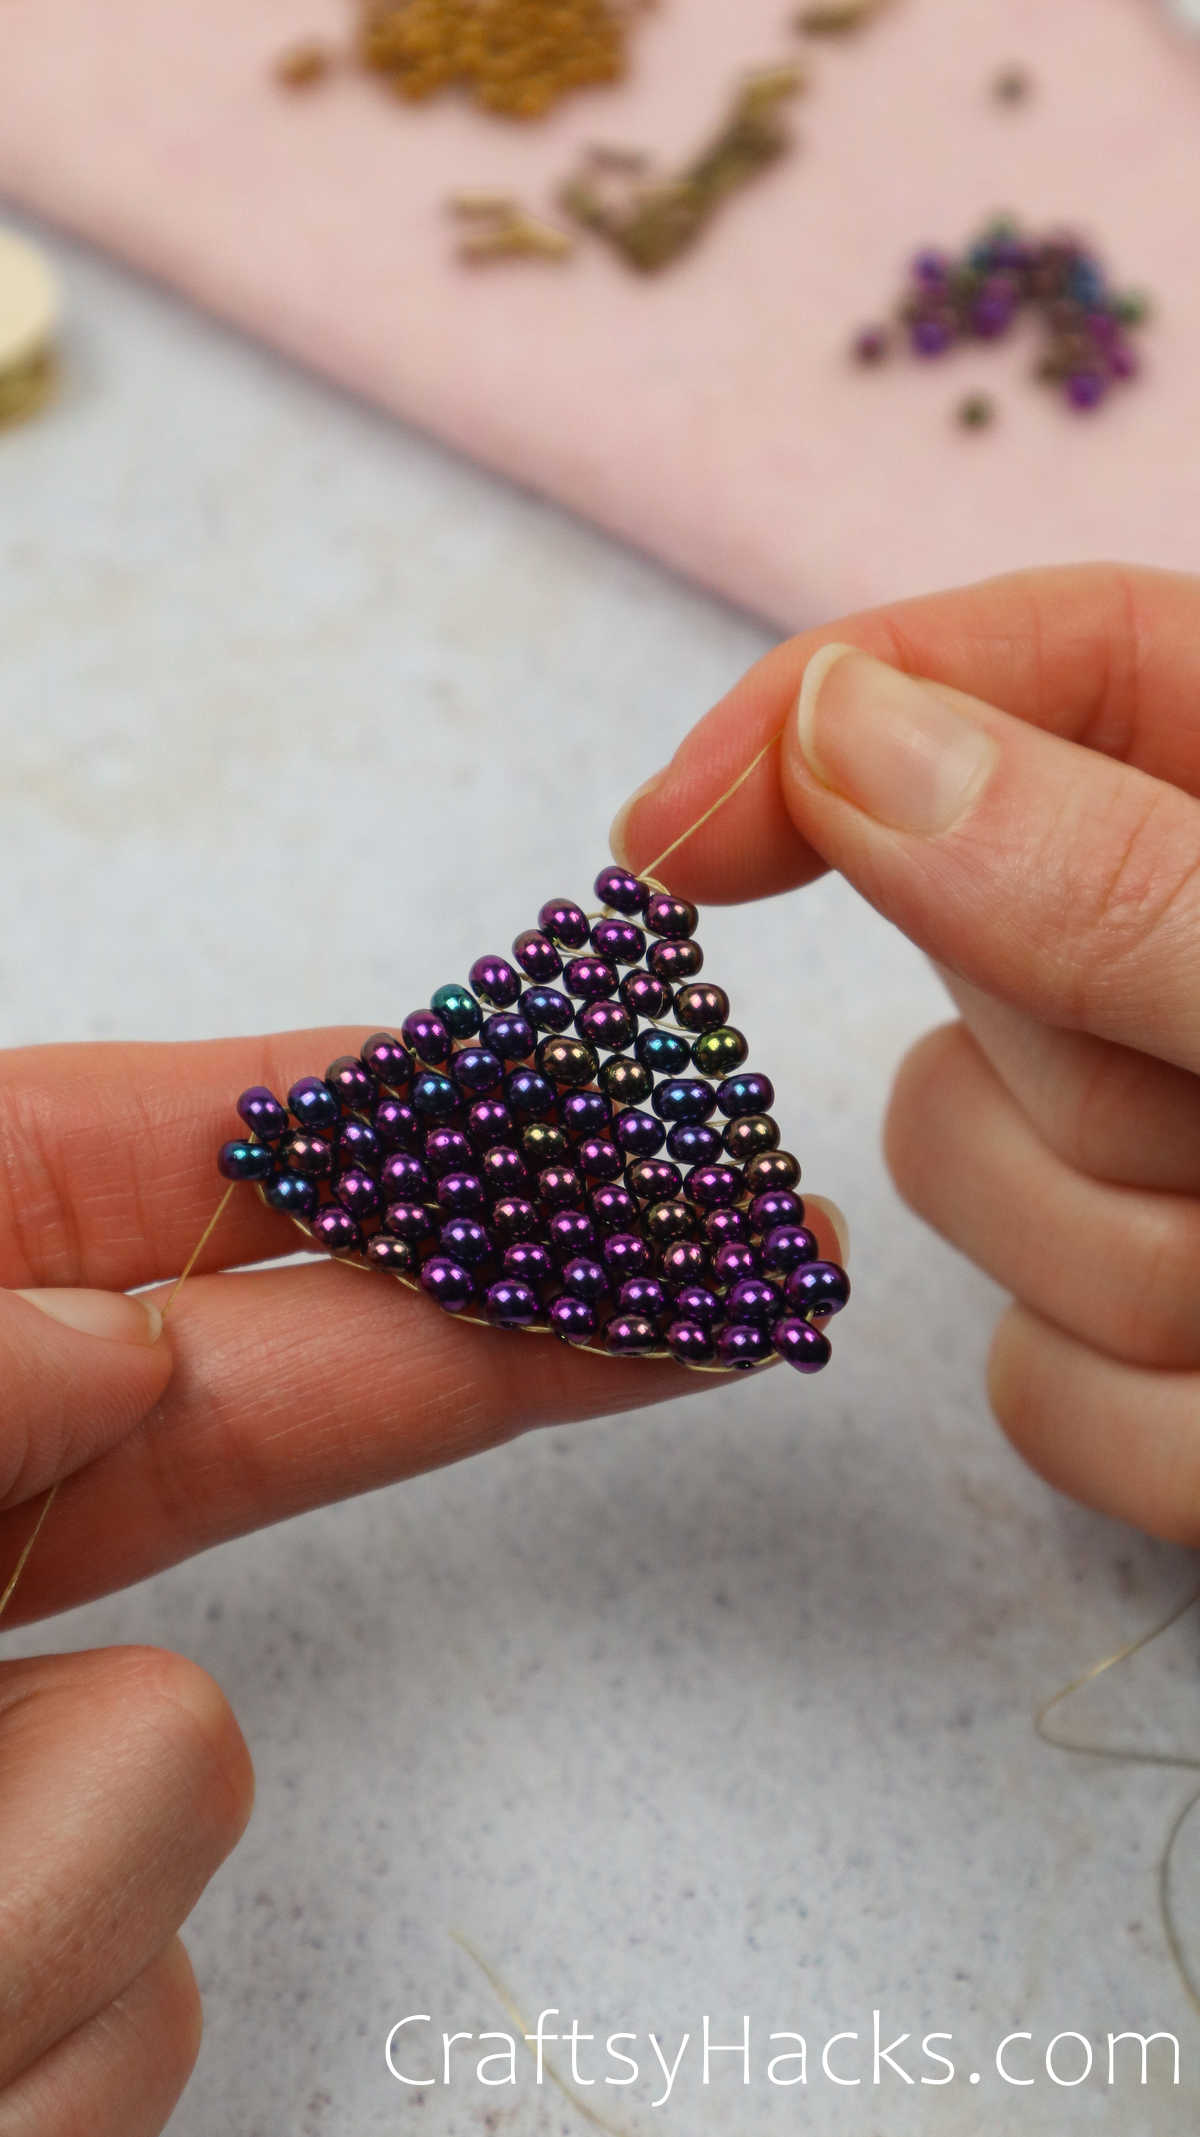 threading beads together to form a traingle shape